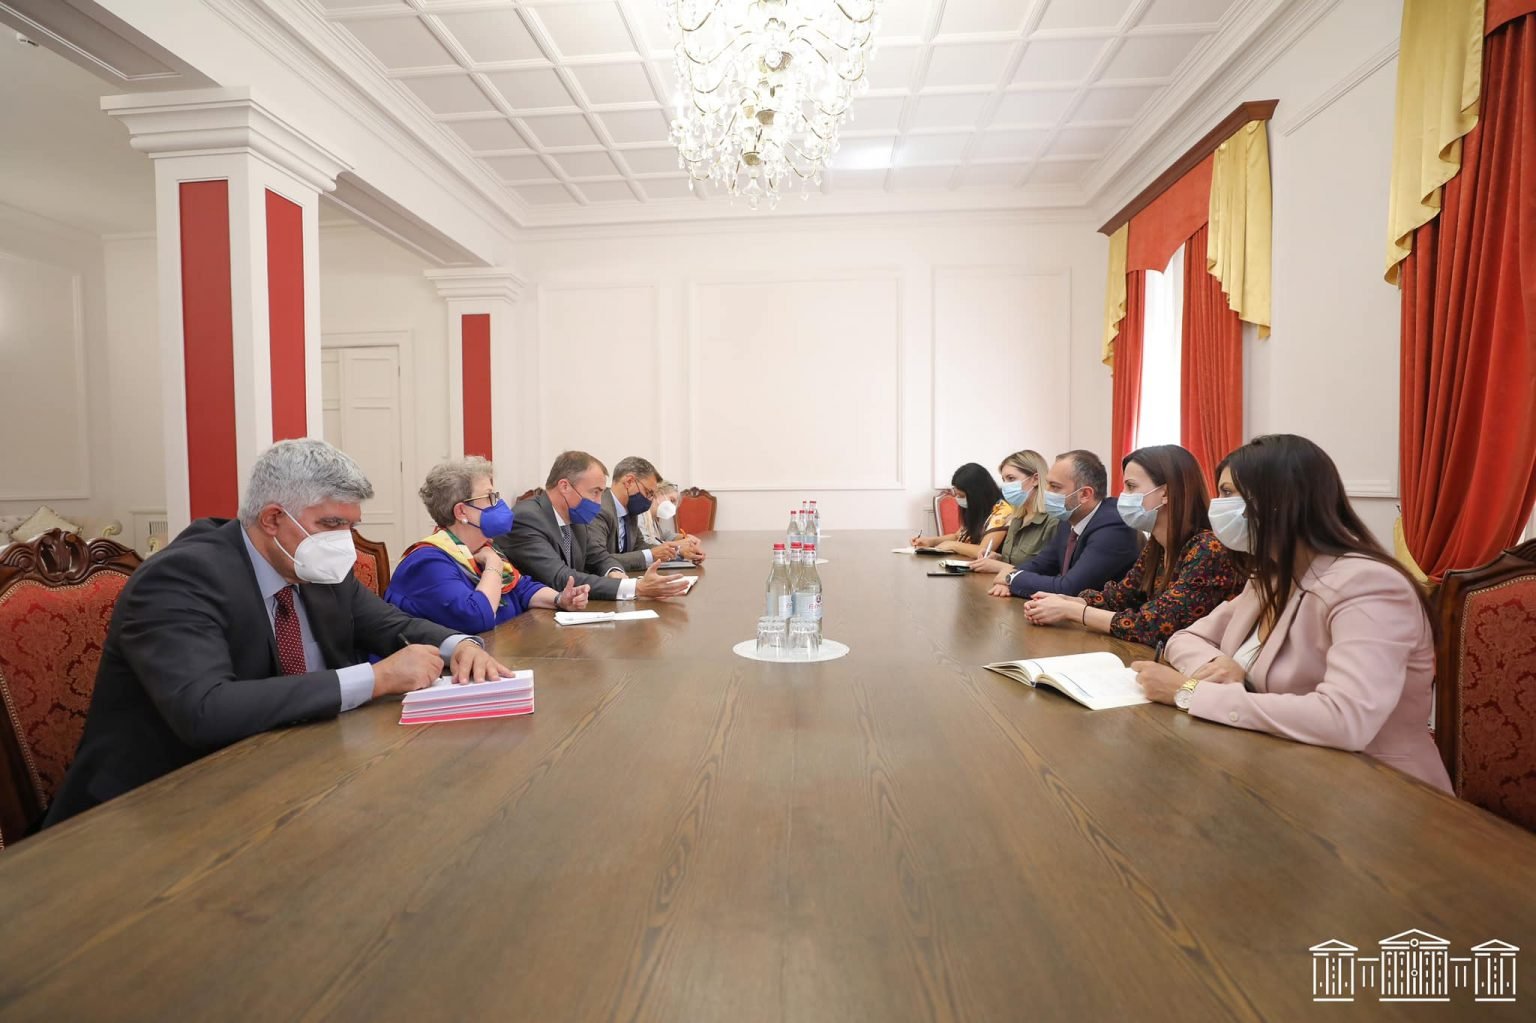 Էդուարդ Աղաջանյանը հանդիպել է ԵՄ հատուկ ներկայացուցիչ Տոյվո Կլաարի գլխավորած պատվիրակության հետ